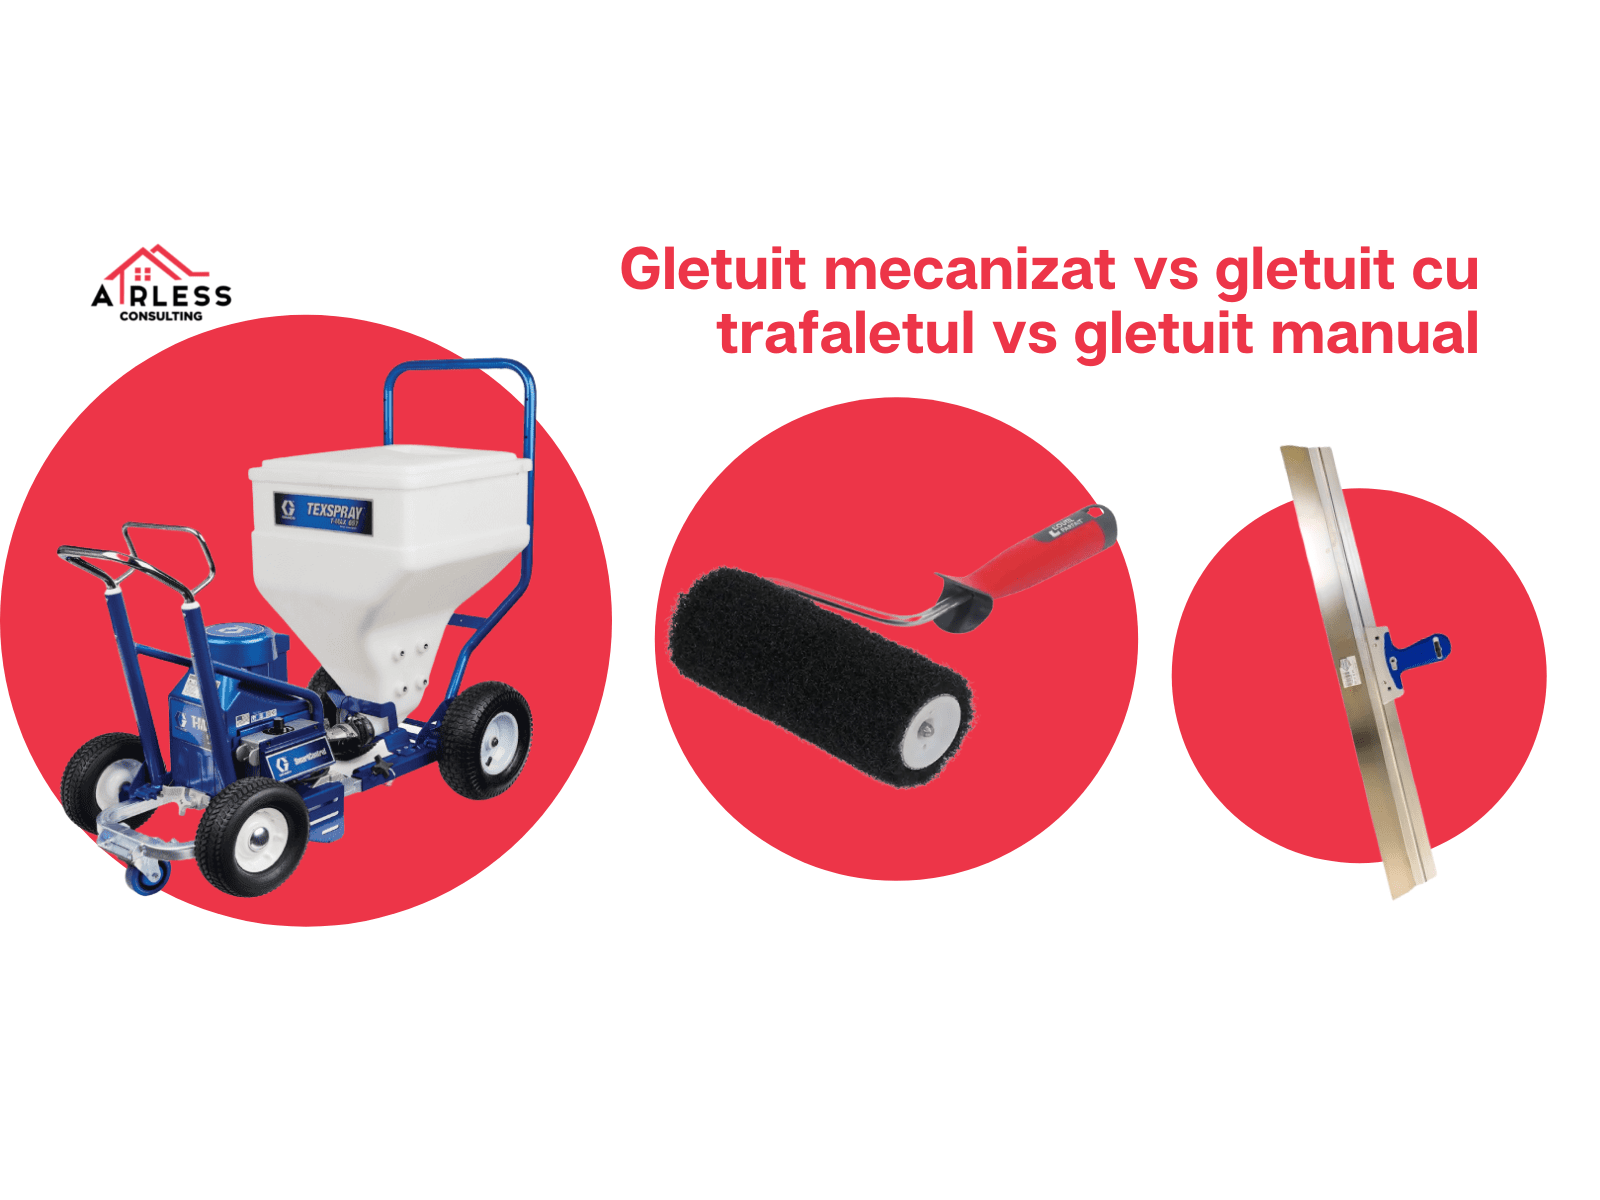 Gletuit Mecanizat vs Gletuit cu Trafaletul vs Gletuit Manual